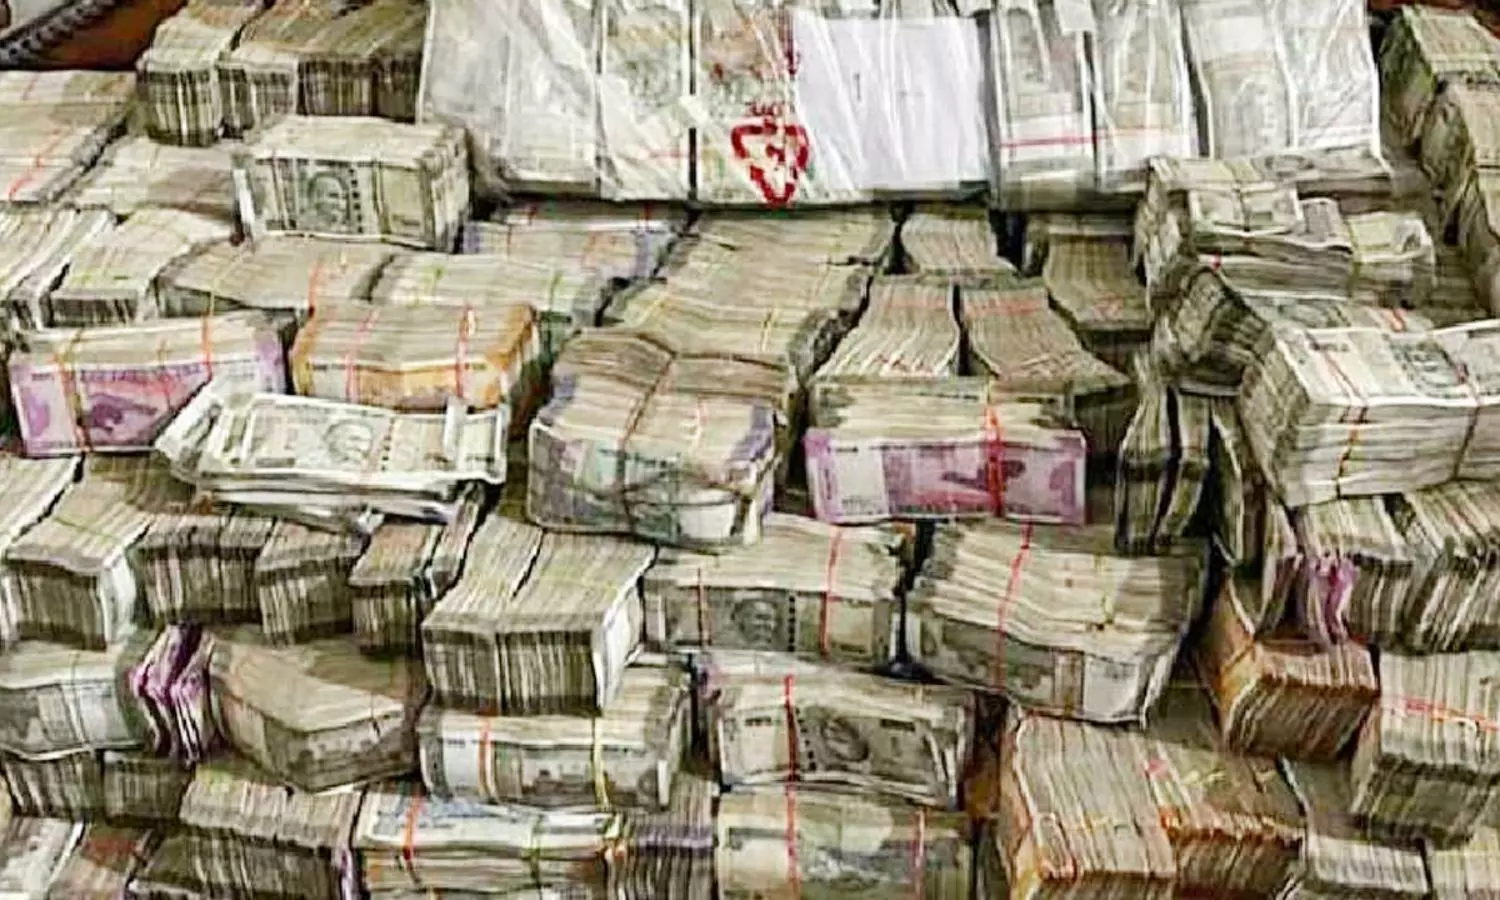 Huge cash seized in NTR district